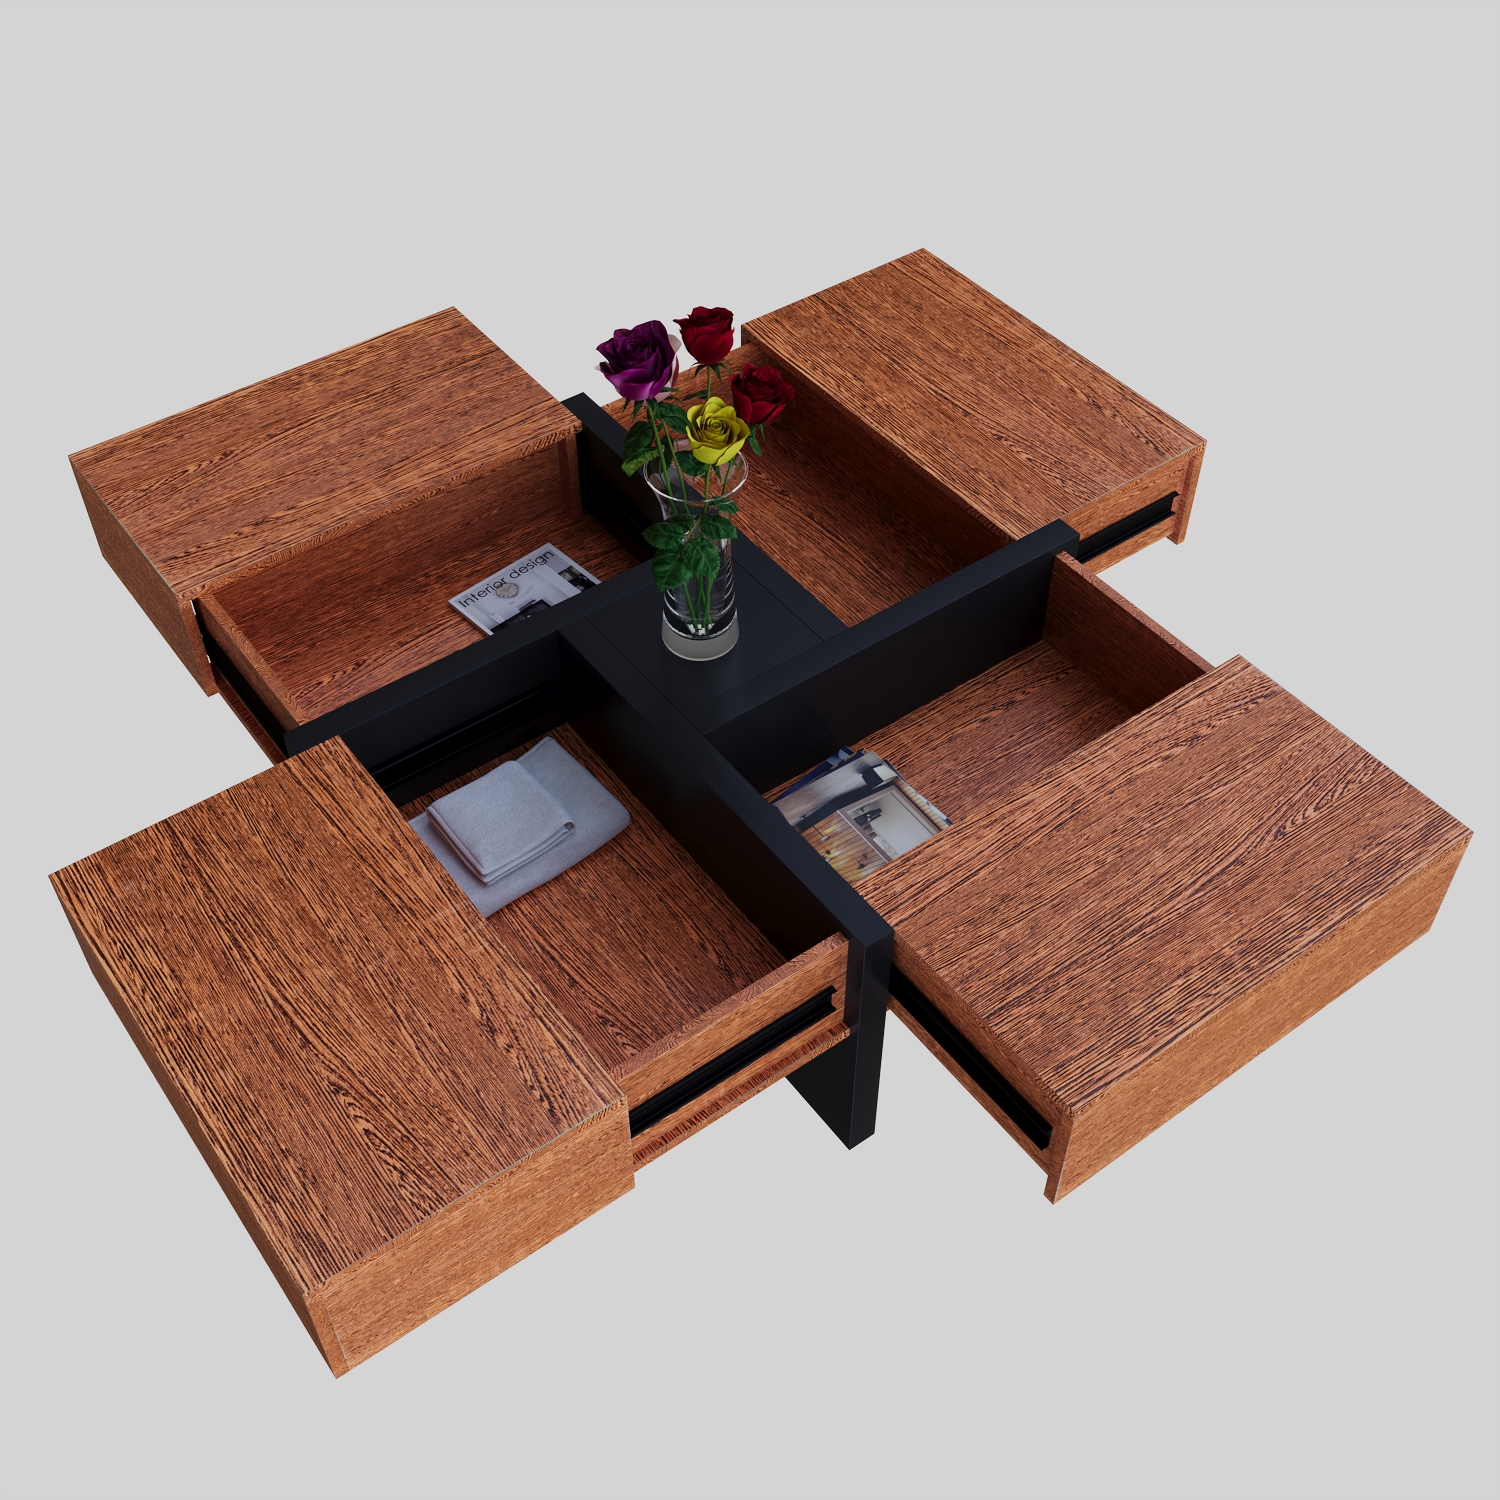 कॉफी टेबल 3d max Corona render 9 में प्रस्तुत छवि